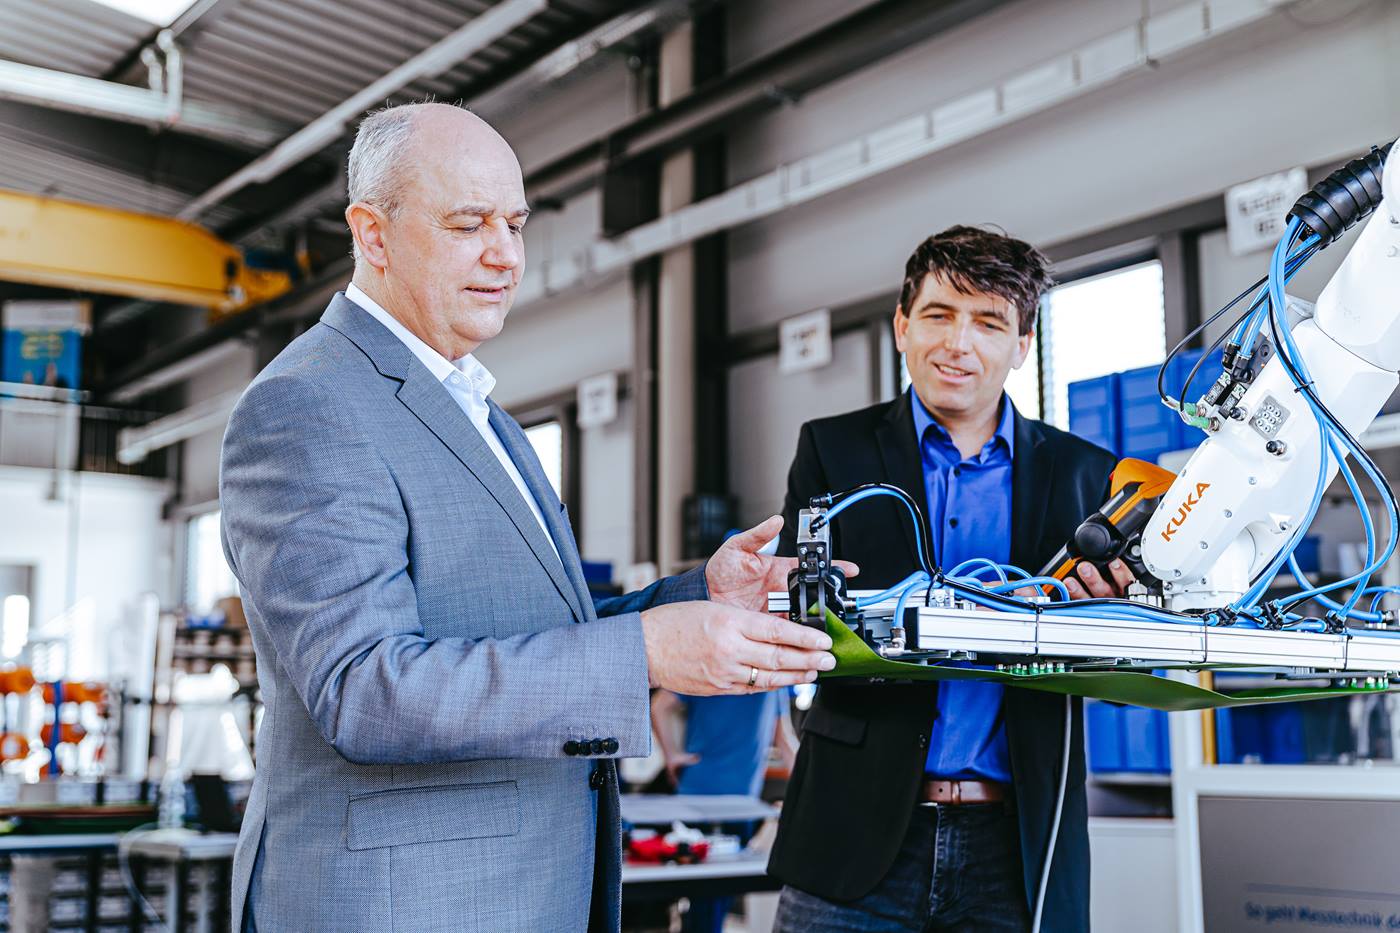 Michael Fraede und Michael Müller, die Gründer von robotextile, begutachten einen KUKA Roboter der in einer Textilproduktion arbeitet.  